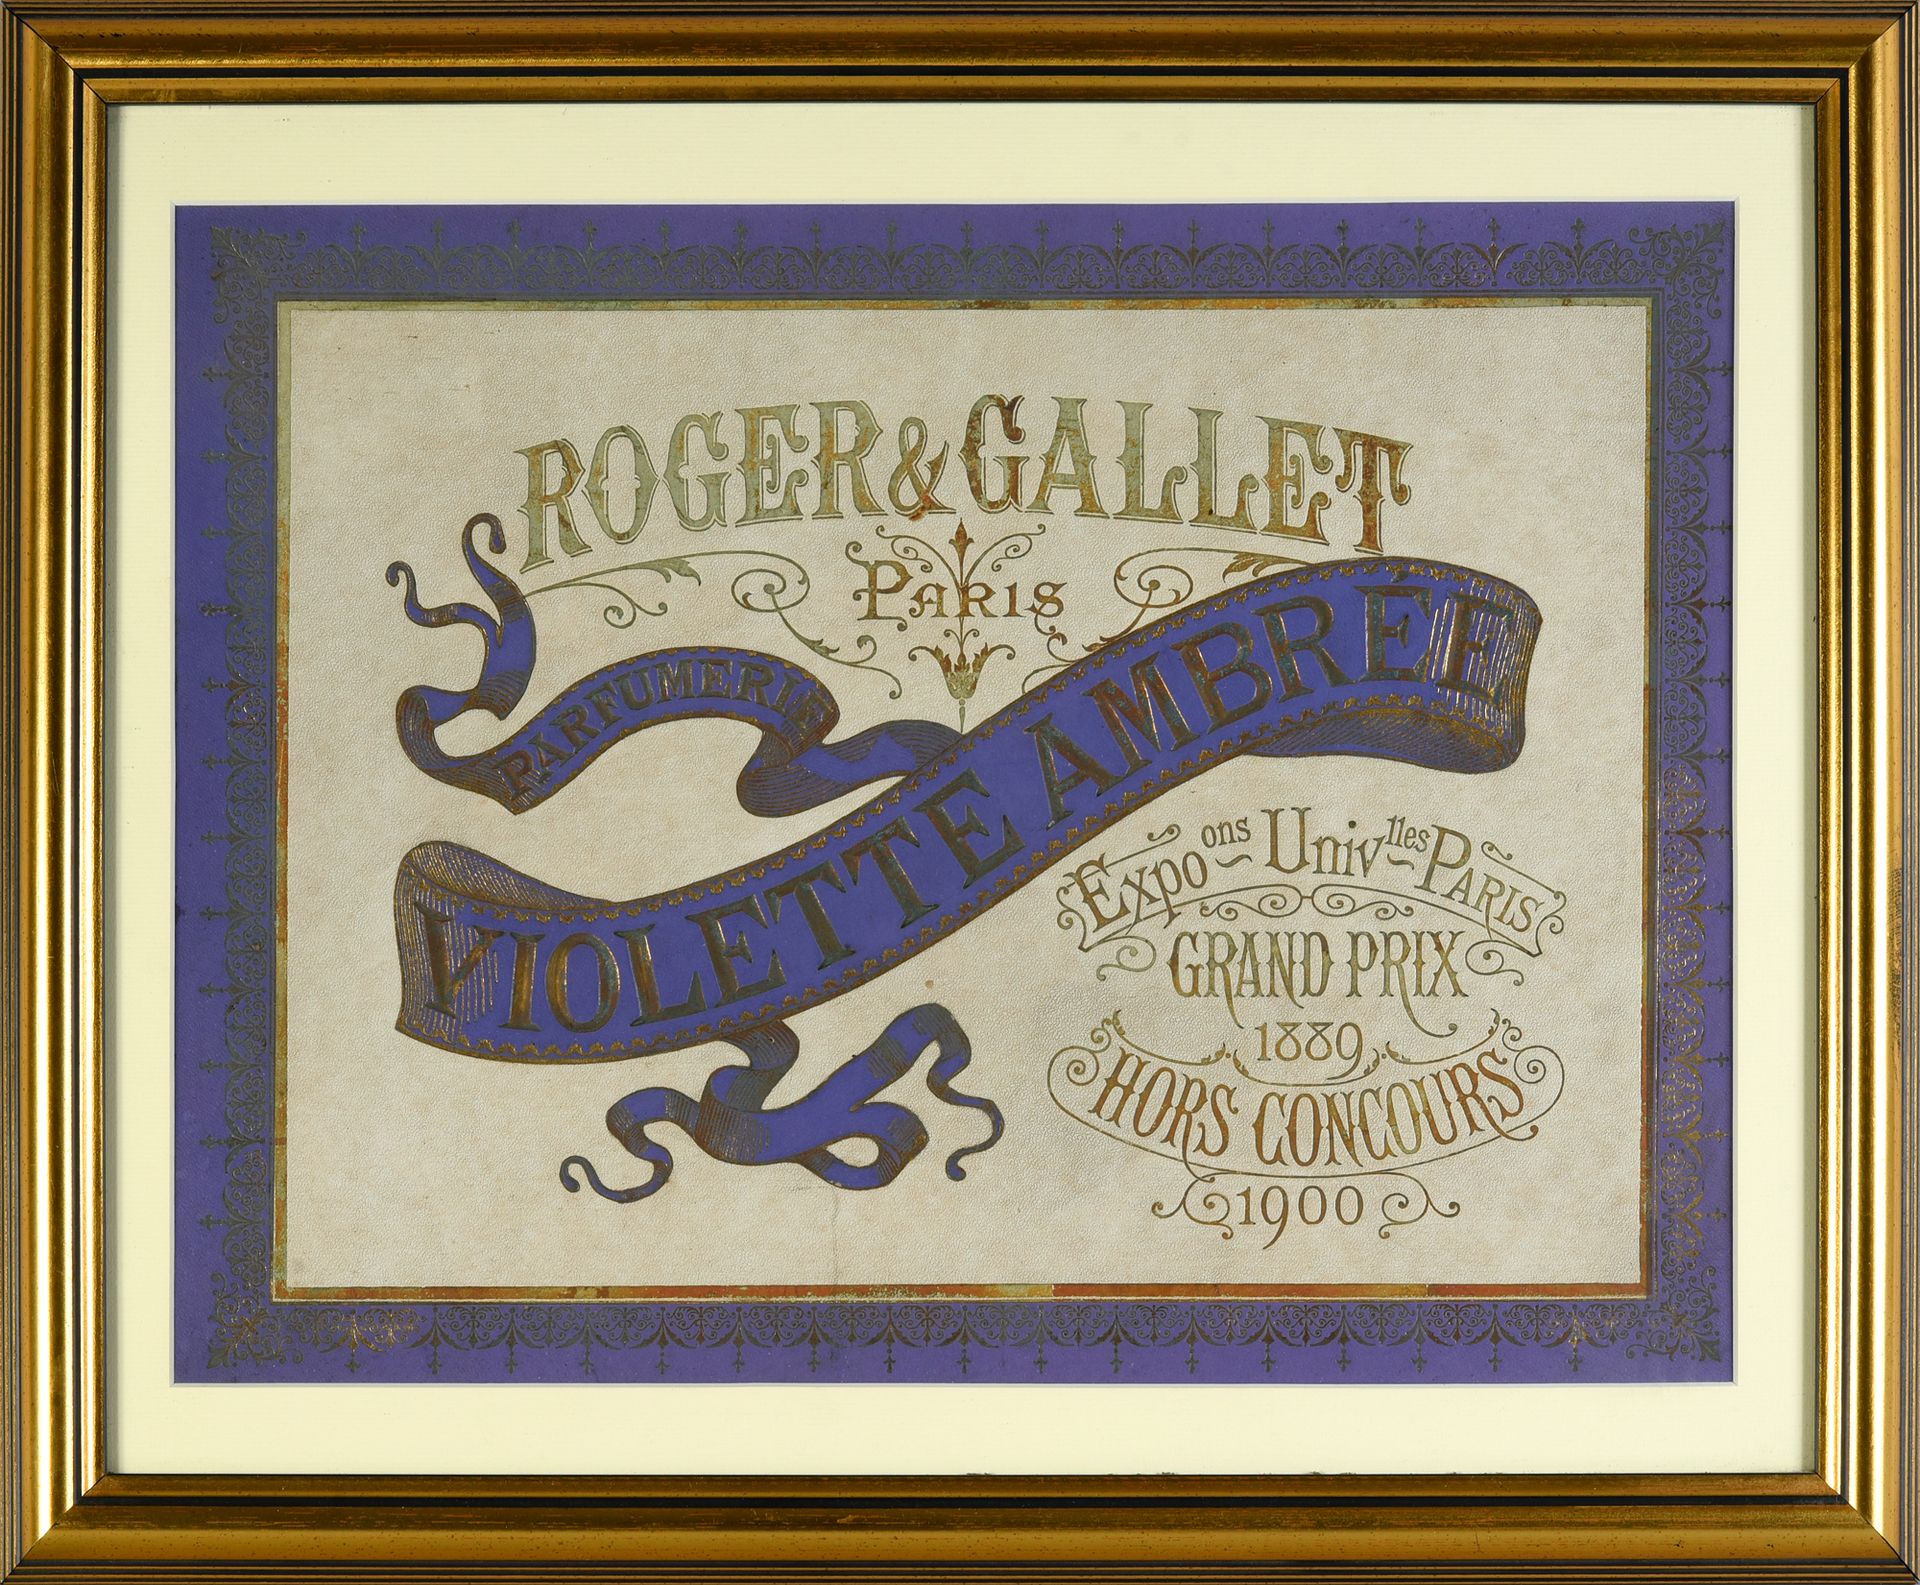 Roger & Gallet - «Violette Ambrée» - (1905) 
Panneau publicitaire en carton esta&hellip;